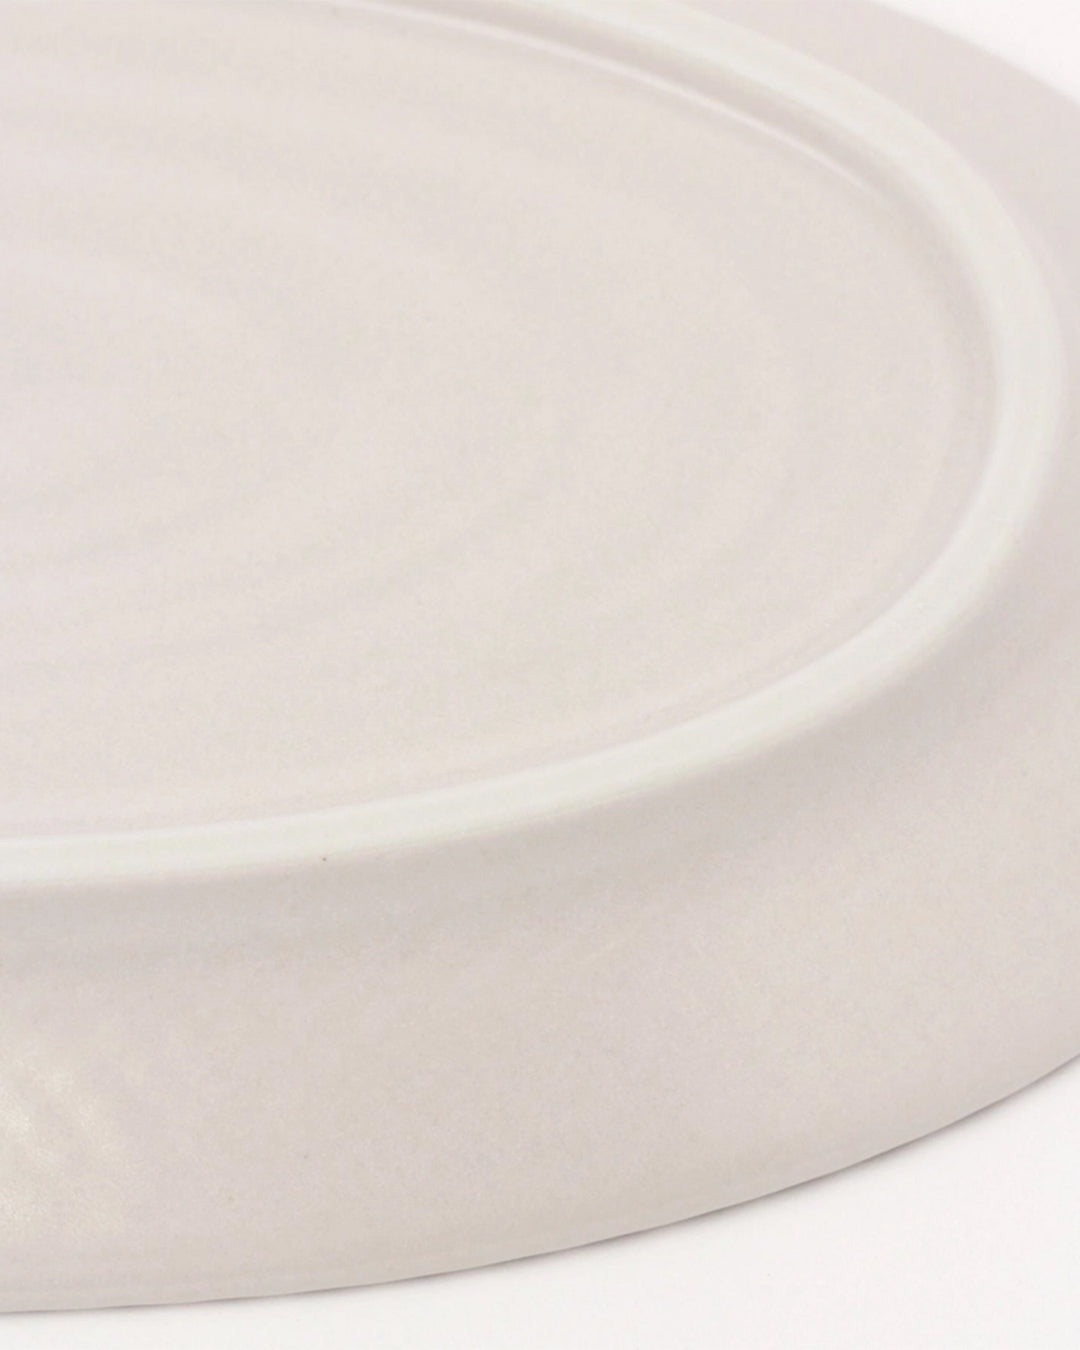 Lakole Mino Ware Large Oval Platter - White